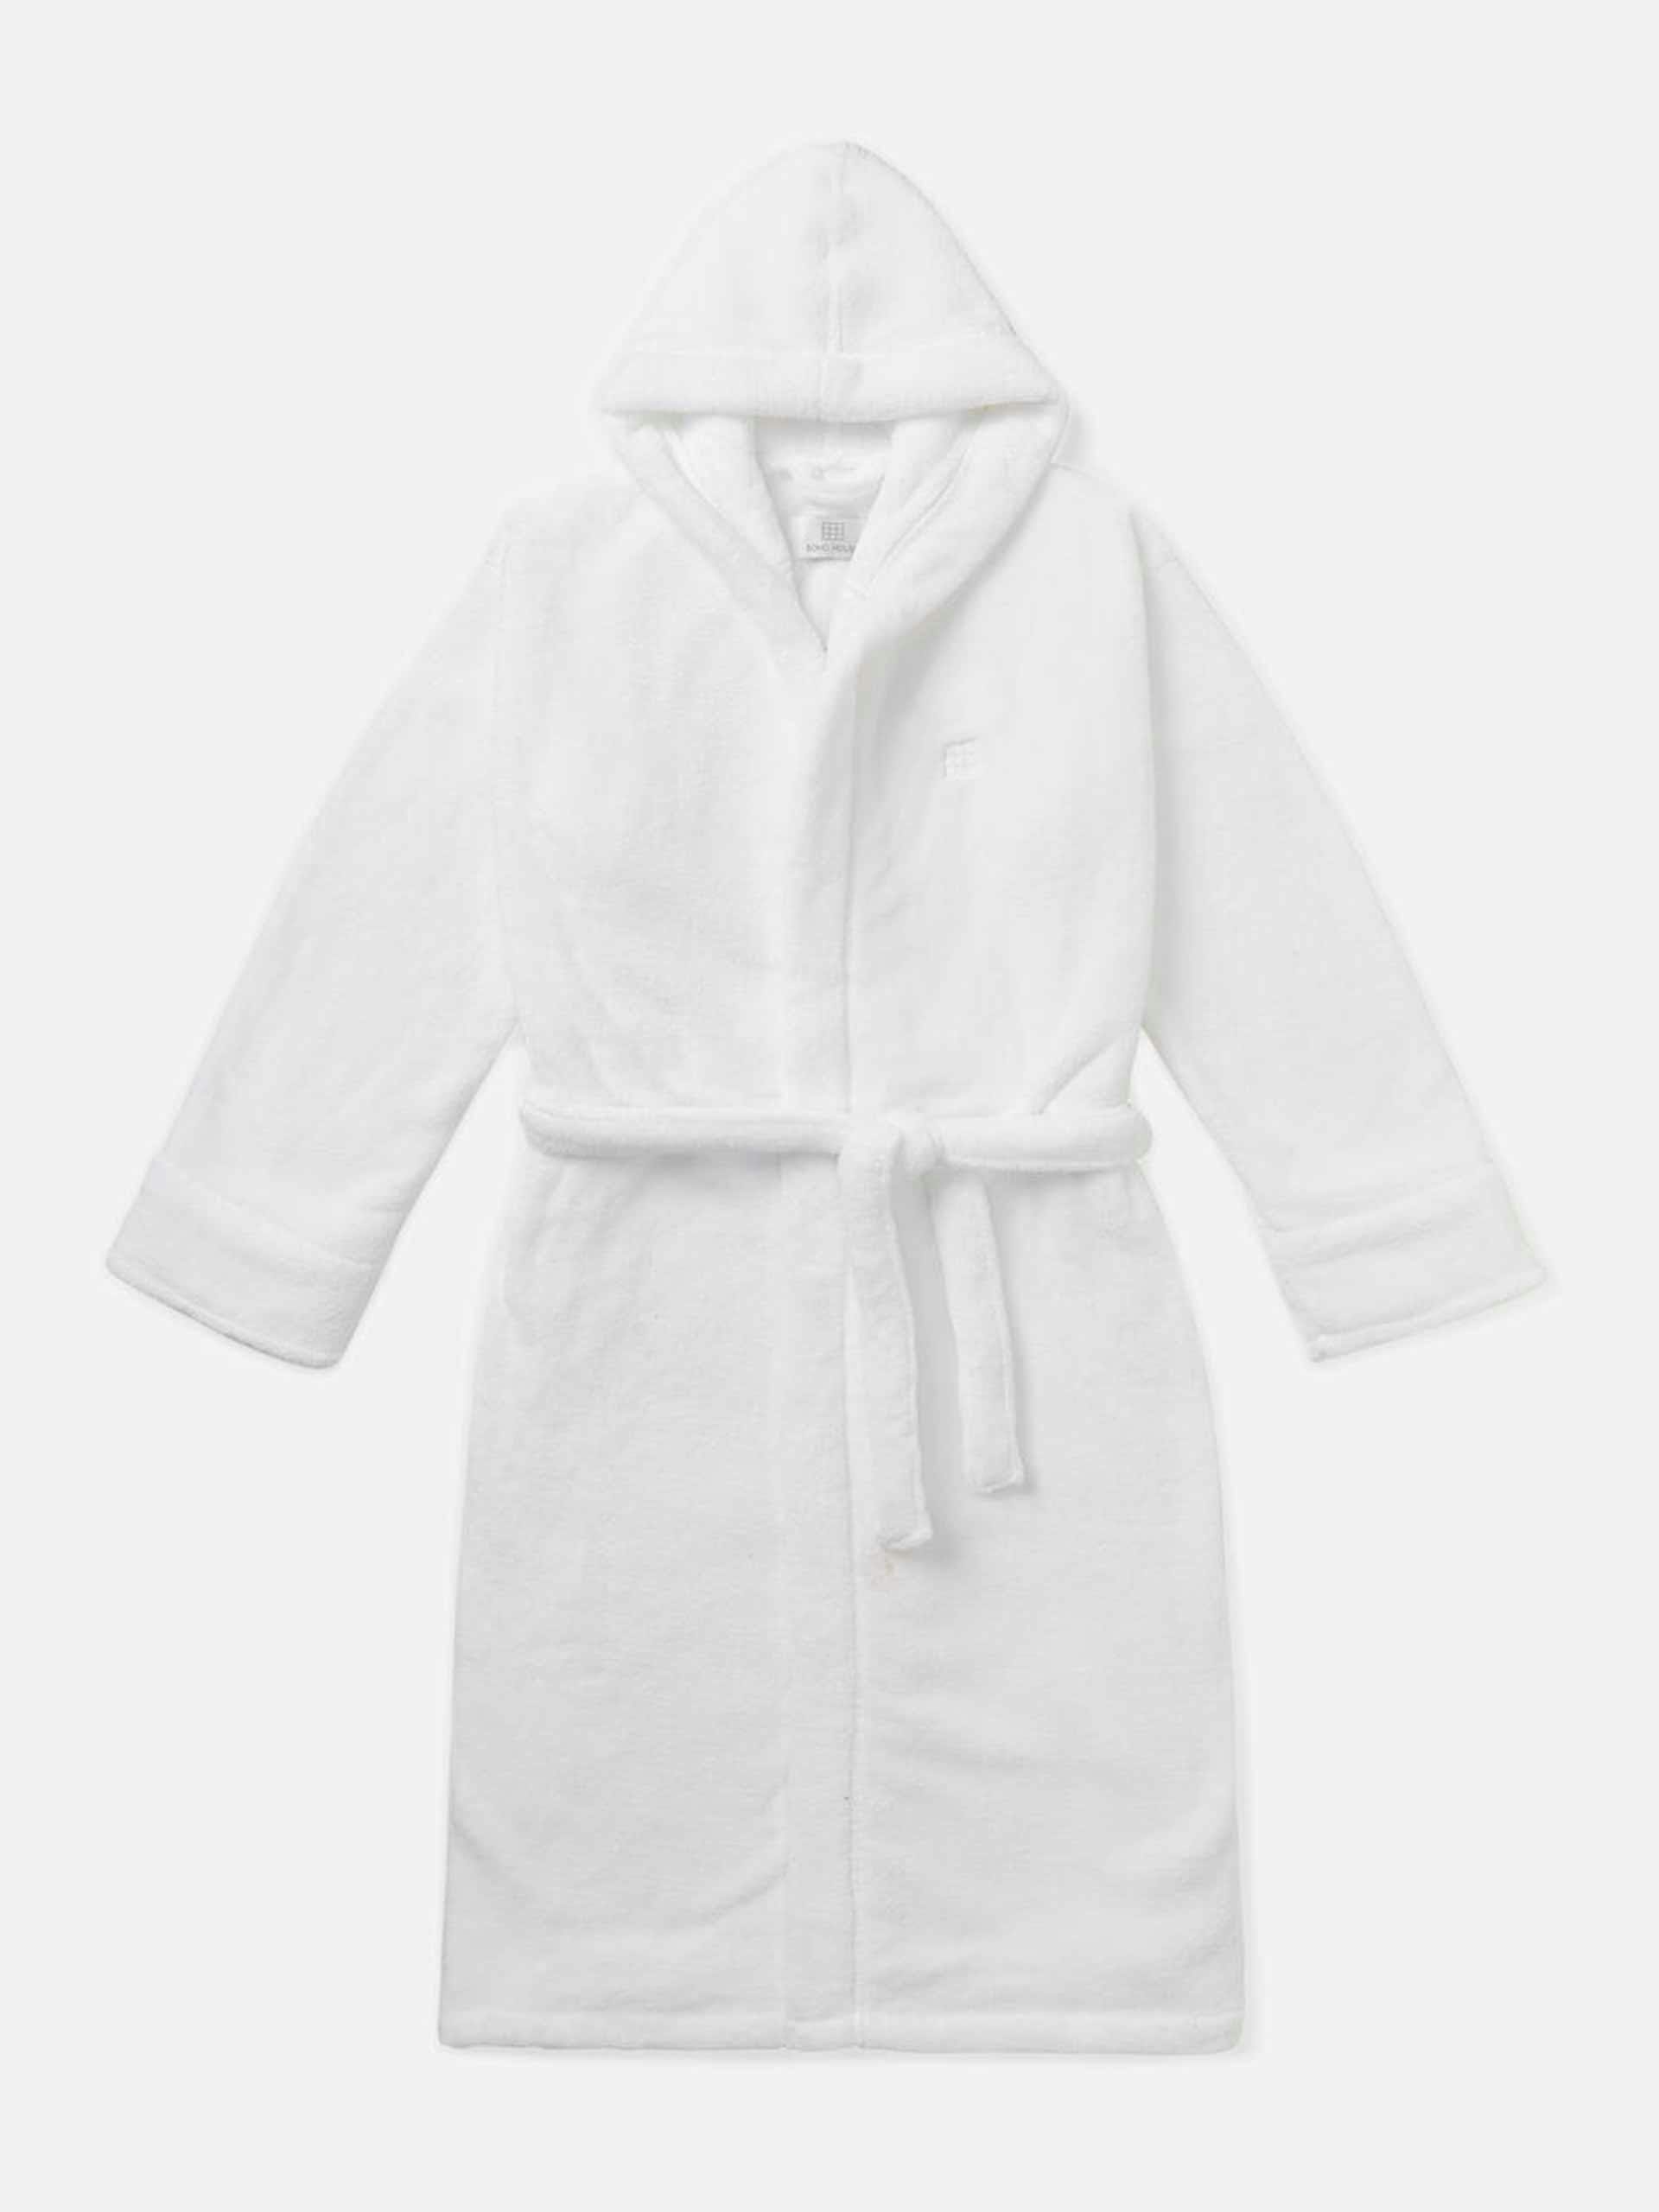 White House robe